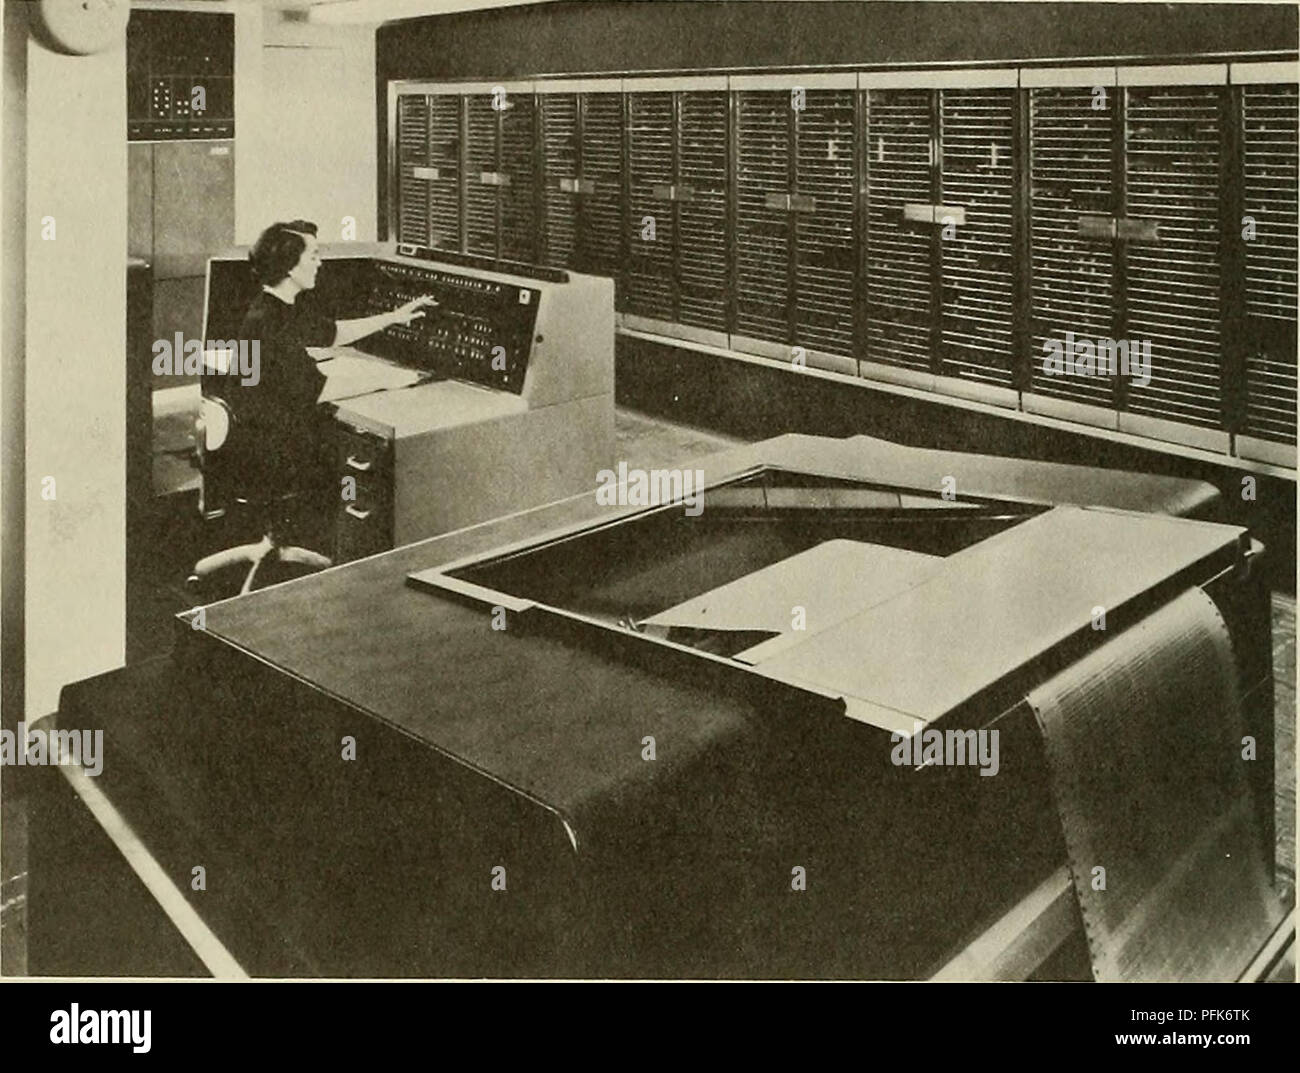 . Dahlgren. Dahlgren Labor. 128 Dahlgren. Naval Ordnance Research Calculator (NORC) geliefert an Dahlgren 1955. denke nicht, dass es wirklich funktionieren würde, aber die Leute bei Watson Lab, die von IBM gesponsert und einige andere Ingenieure, die nicht gebaut hatten die anderen Computer dachte, dass es funktionieren würde, damit sie ihn so auf den Norc, und das war eine der wesentlichen Verbesserungen im Bereich der Computertechnologie an diesem Punkt. Als wir die NORC, es war etwa 100 Mal schneller als alles, was wir vorher hatten, so dass eröffnet Bereichen Probleme, oder zu aufwändig gewesen wäre zu zeitaufwändig auf kleineren Comput Stockfoto